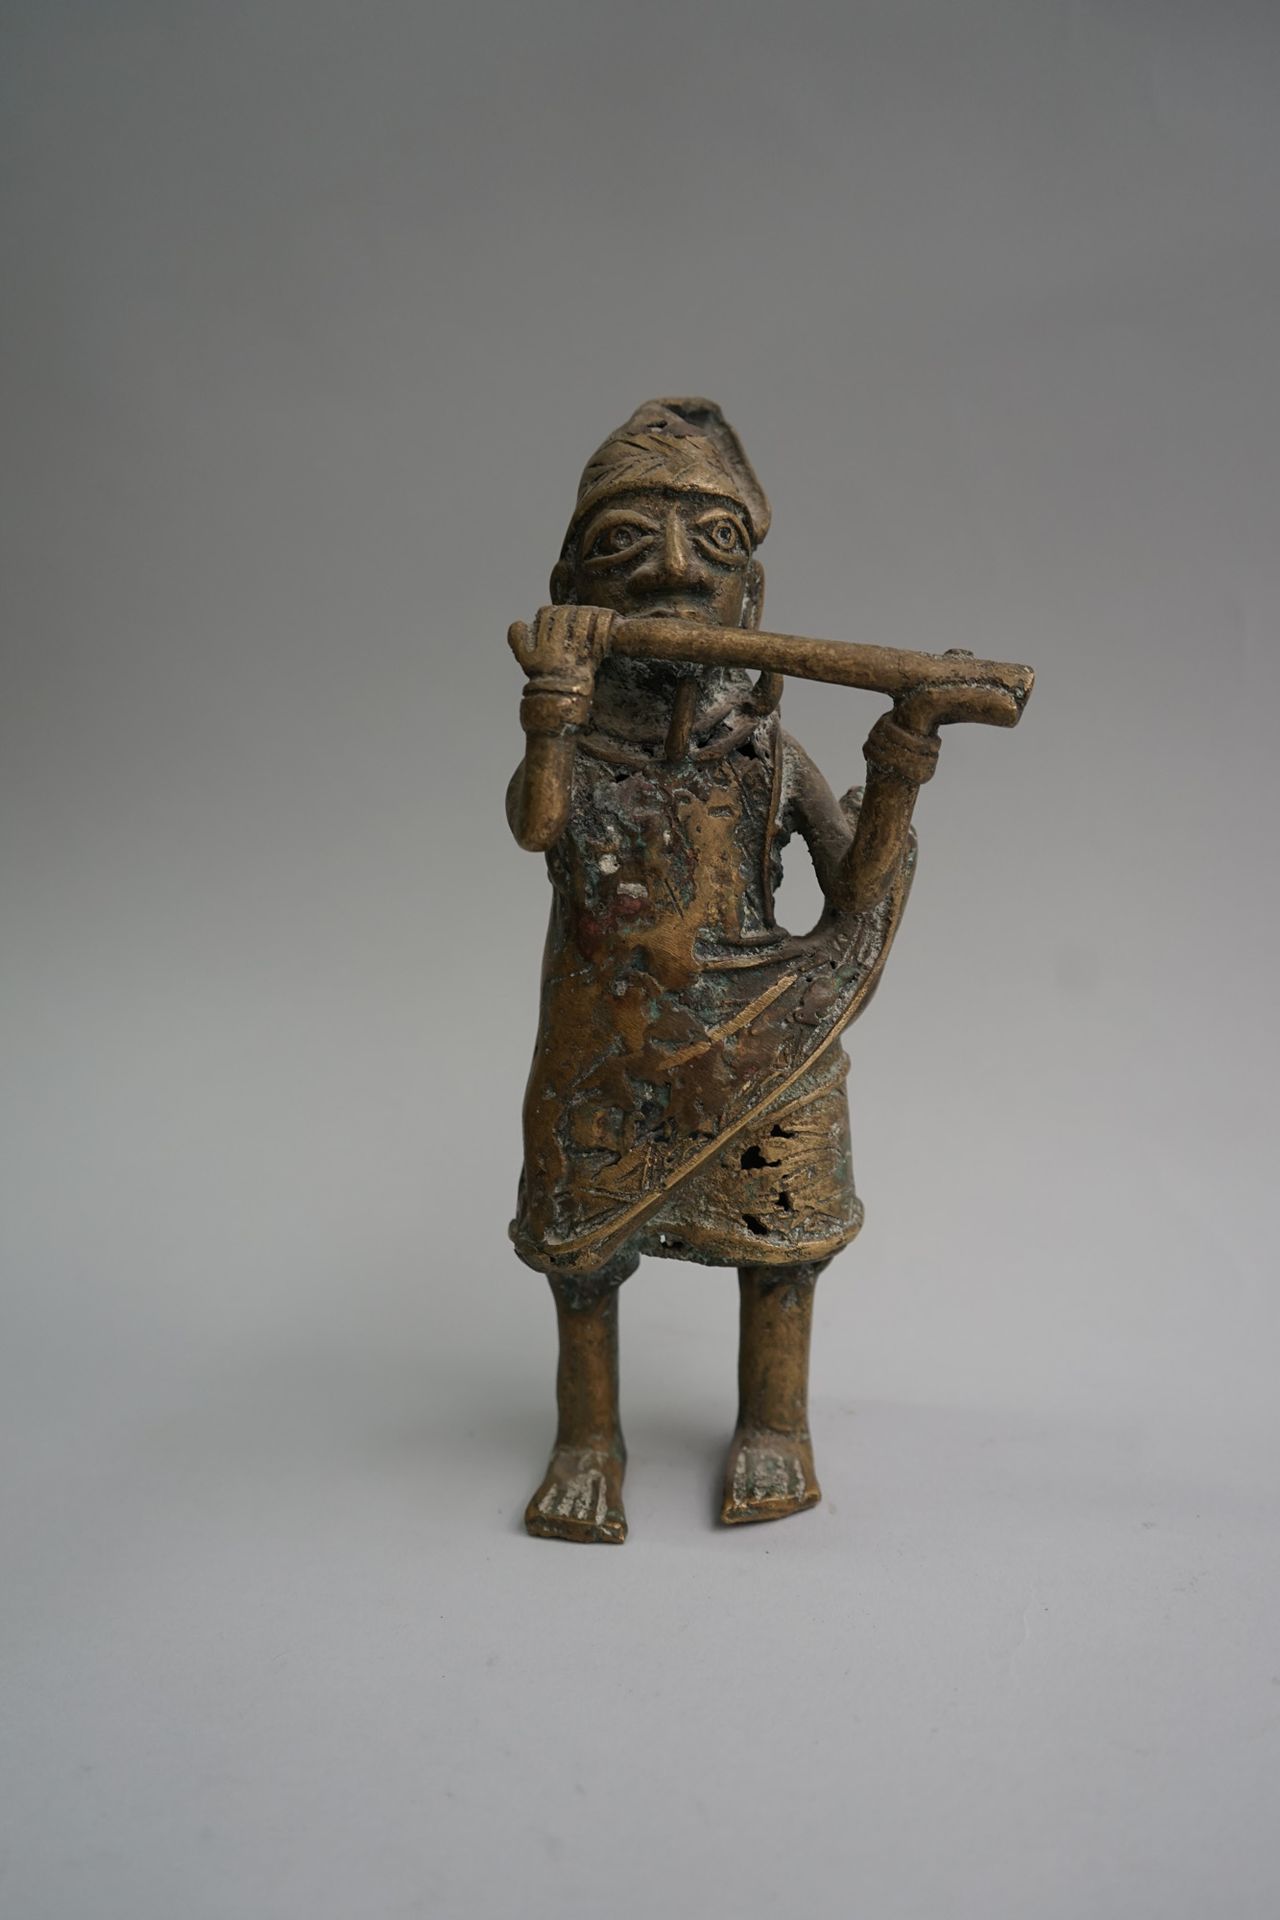 Null 图中呈现的是一位长笛演奏者。青铜，有天然的铜锈。

尼日利亚。

高：24.5厘米